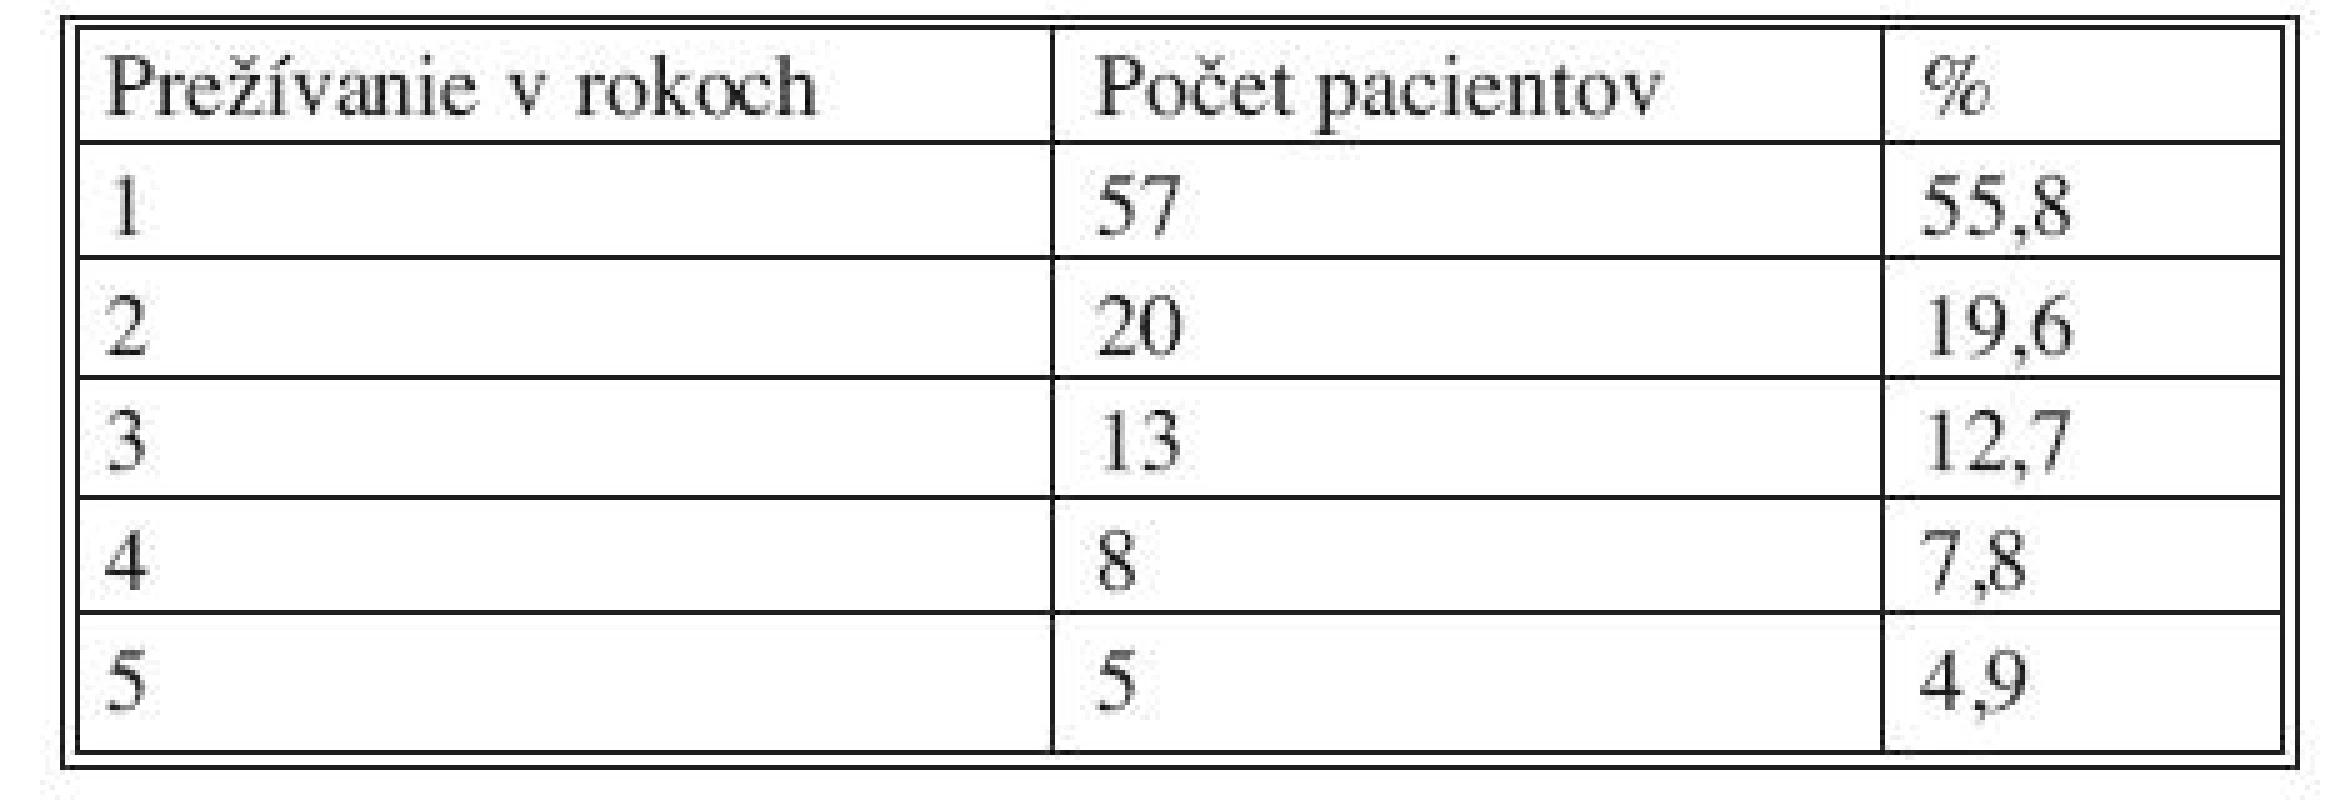 Prežívanie pacientov s karcinóm pankreasu po radikálnej resekcii
Tab. 8. Survival pancreatic cancer patients post pancreatic resection